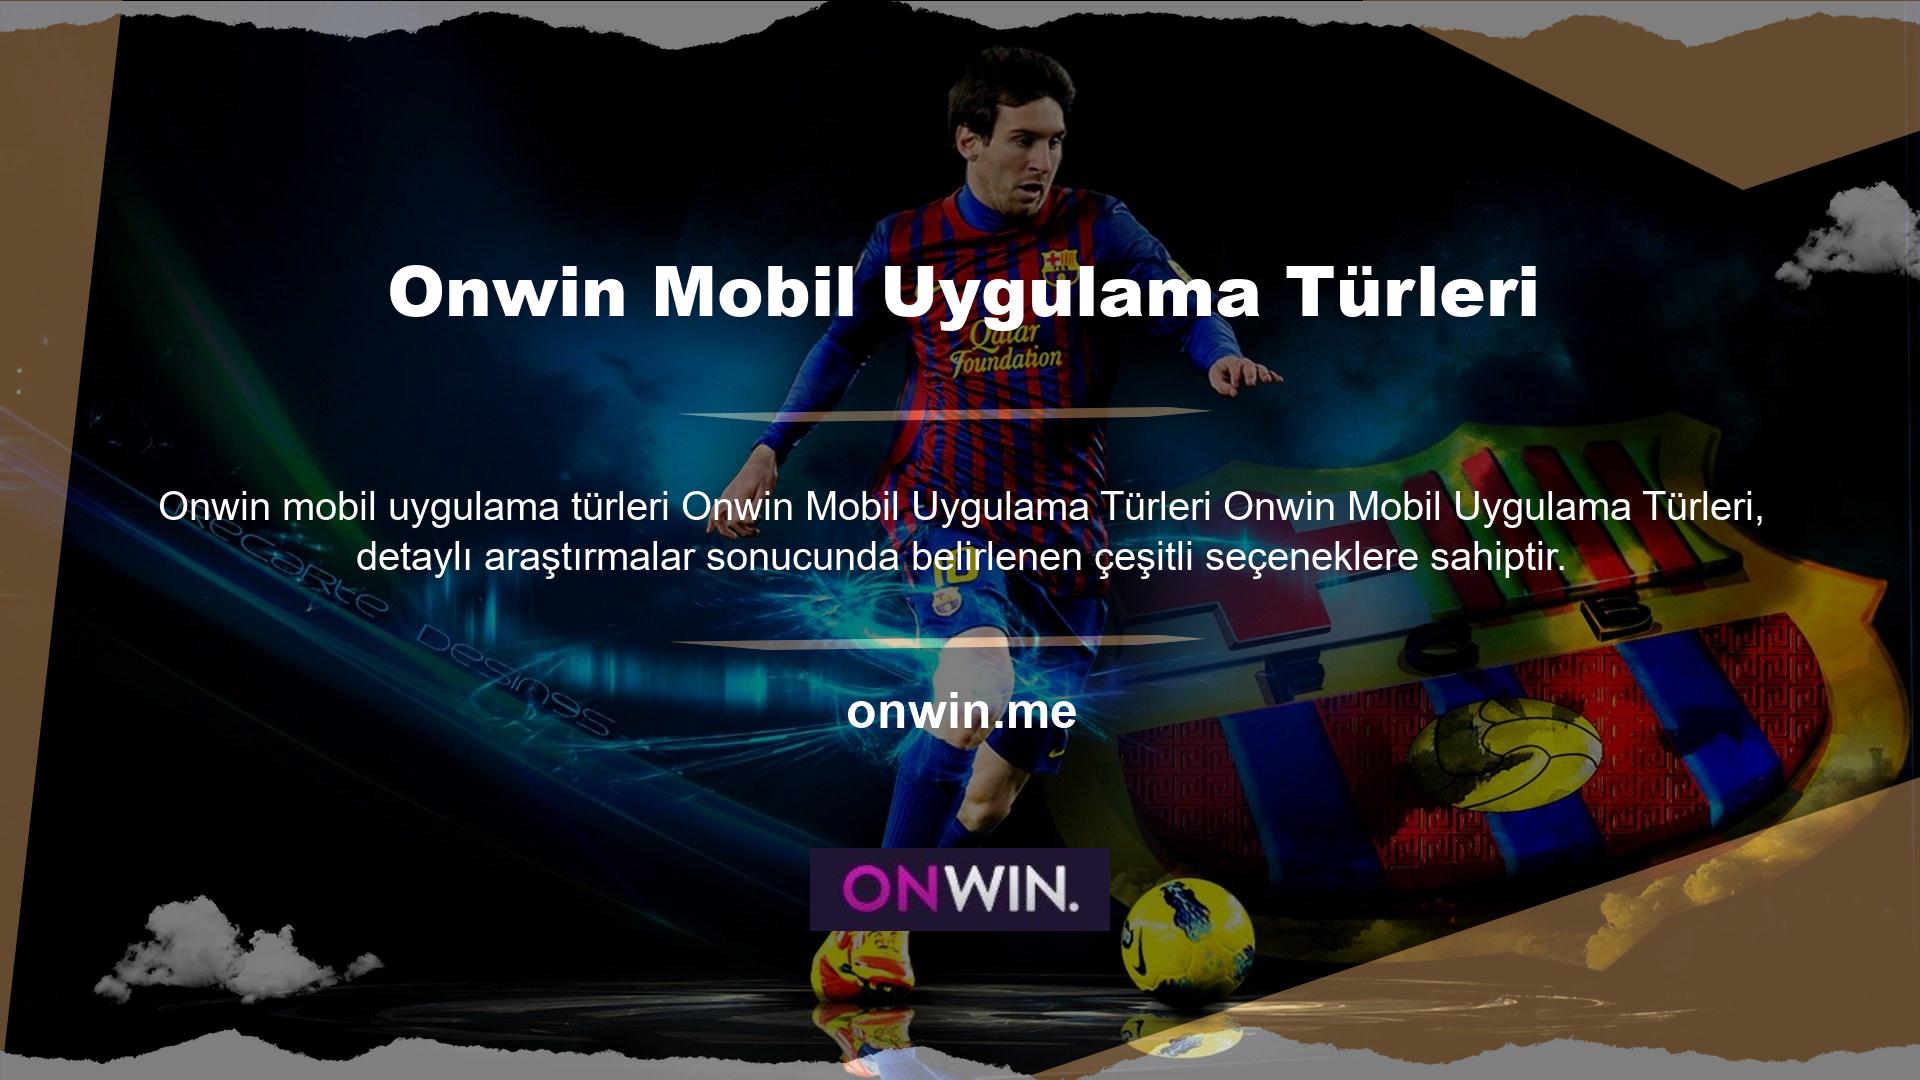 Onwin iPhone uygulaması, IOS işletim sistemli cep telefonuna ihtiyaç duyan kullanıcılar için tasarlanmıştır